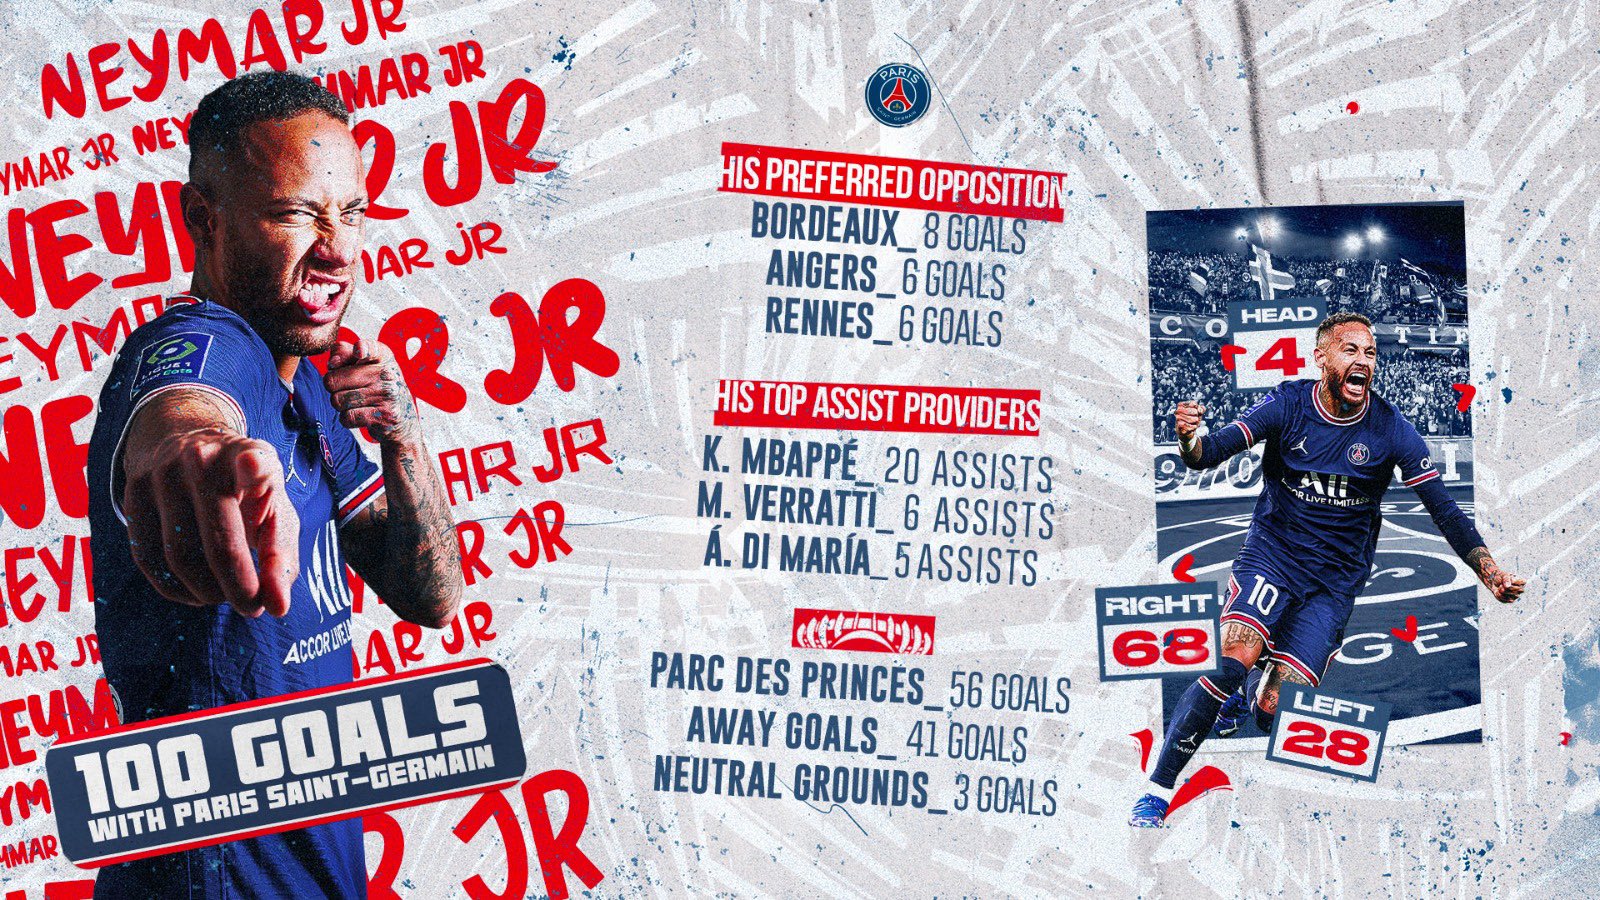 Opposition profile: Paris Saint-Germain